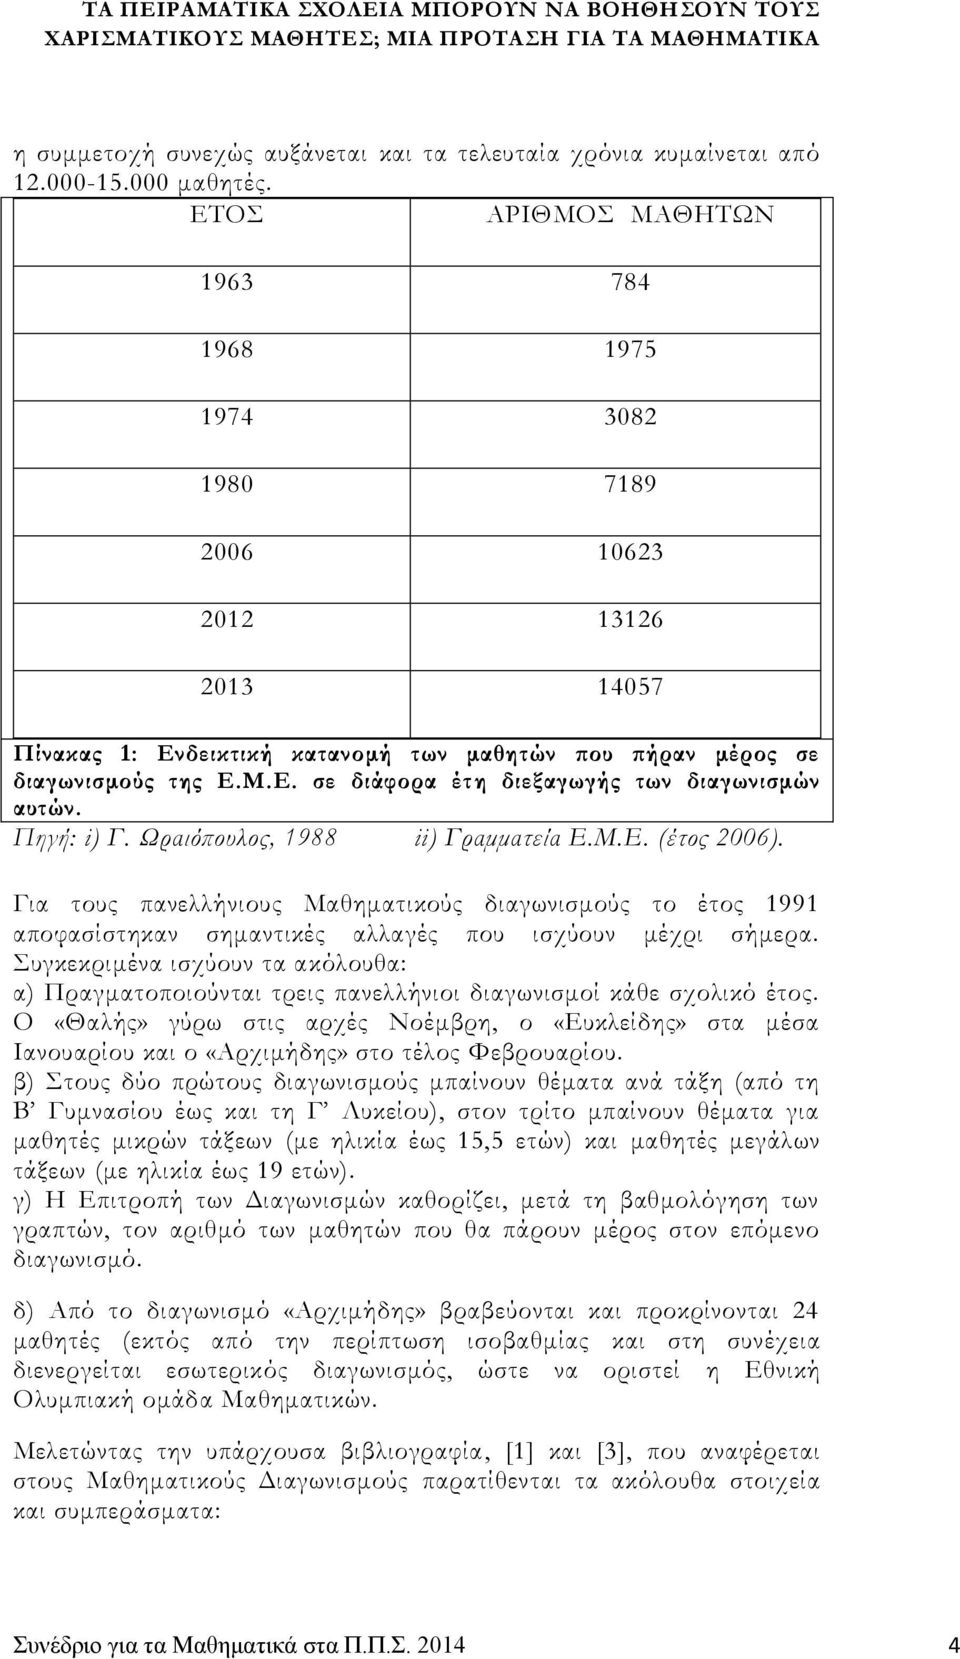 Πηγή: i) Γ. Ωραιόπουλος, 1988 ii) Γραμματεία Ε.Μ.Ε. (έτος 2006). Για τους πανελλήνιους Μαθηματικούς διαγωνισμούς το έτος 1991 αποφασίστηκαν σημαντικές αλλαγές που ισχύουν μέχρι σήμερα.